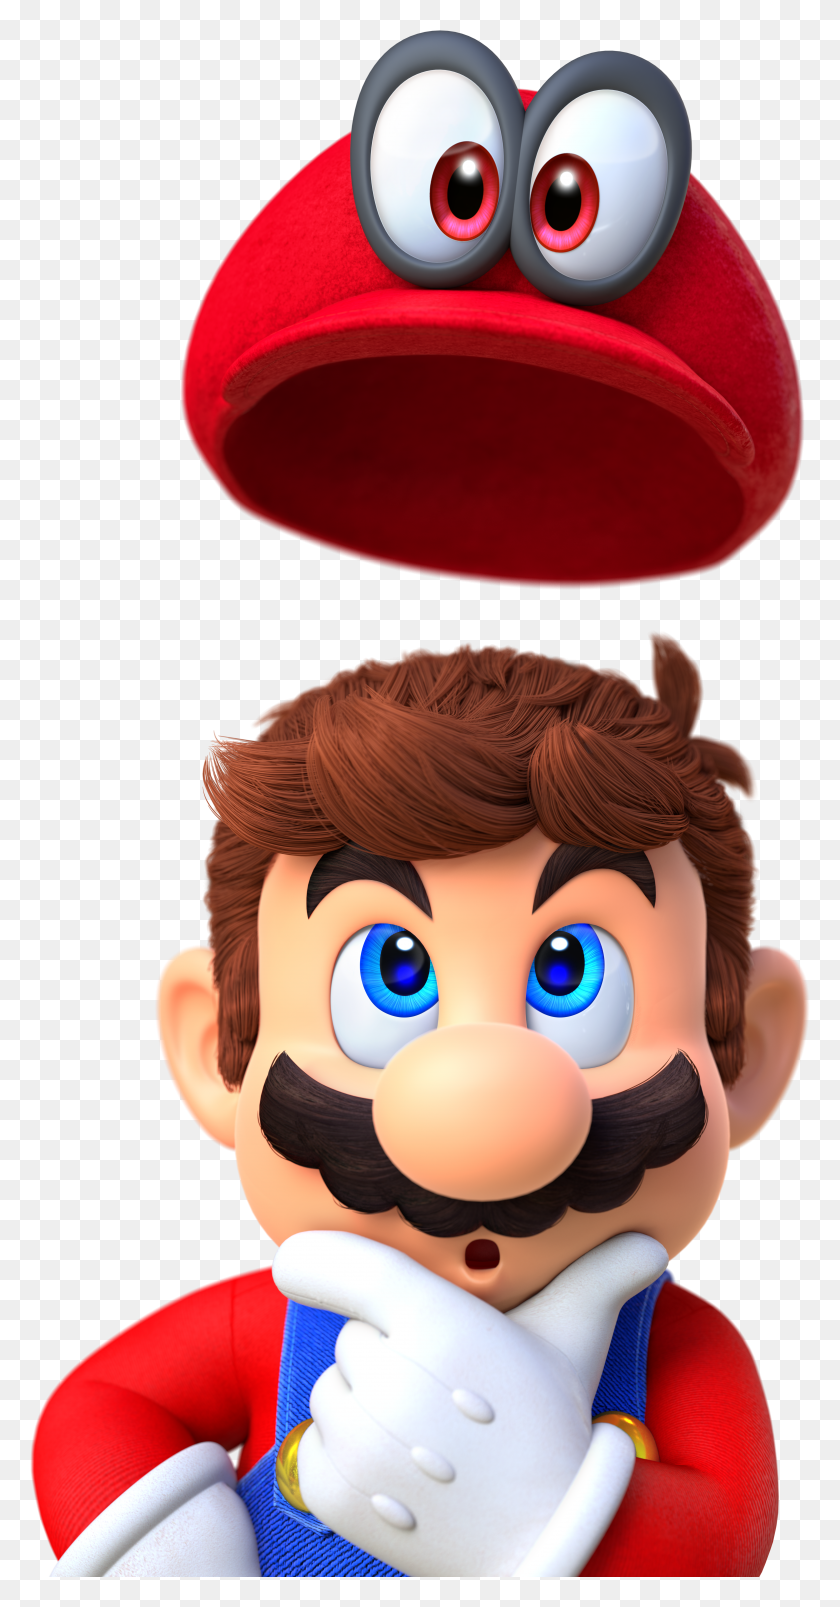 3991x7917 Бесплатная Шляпа Super Mario Odyssey Теперь Доступна В Формате Png С Изображением Животных